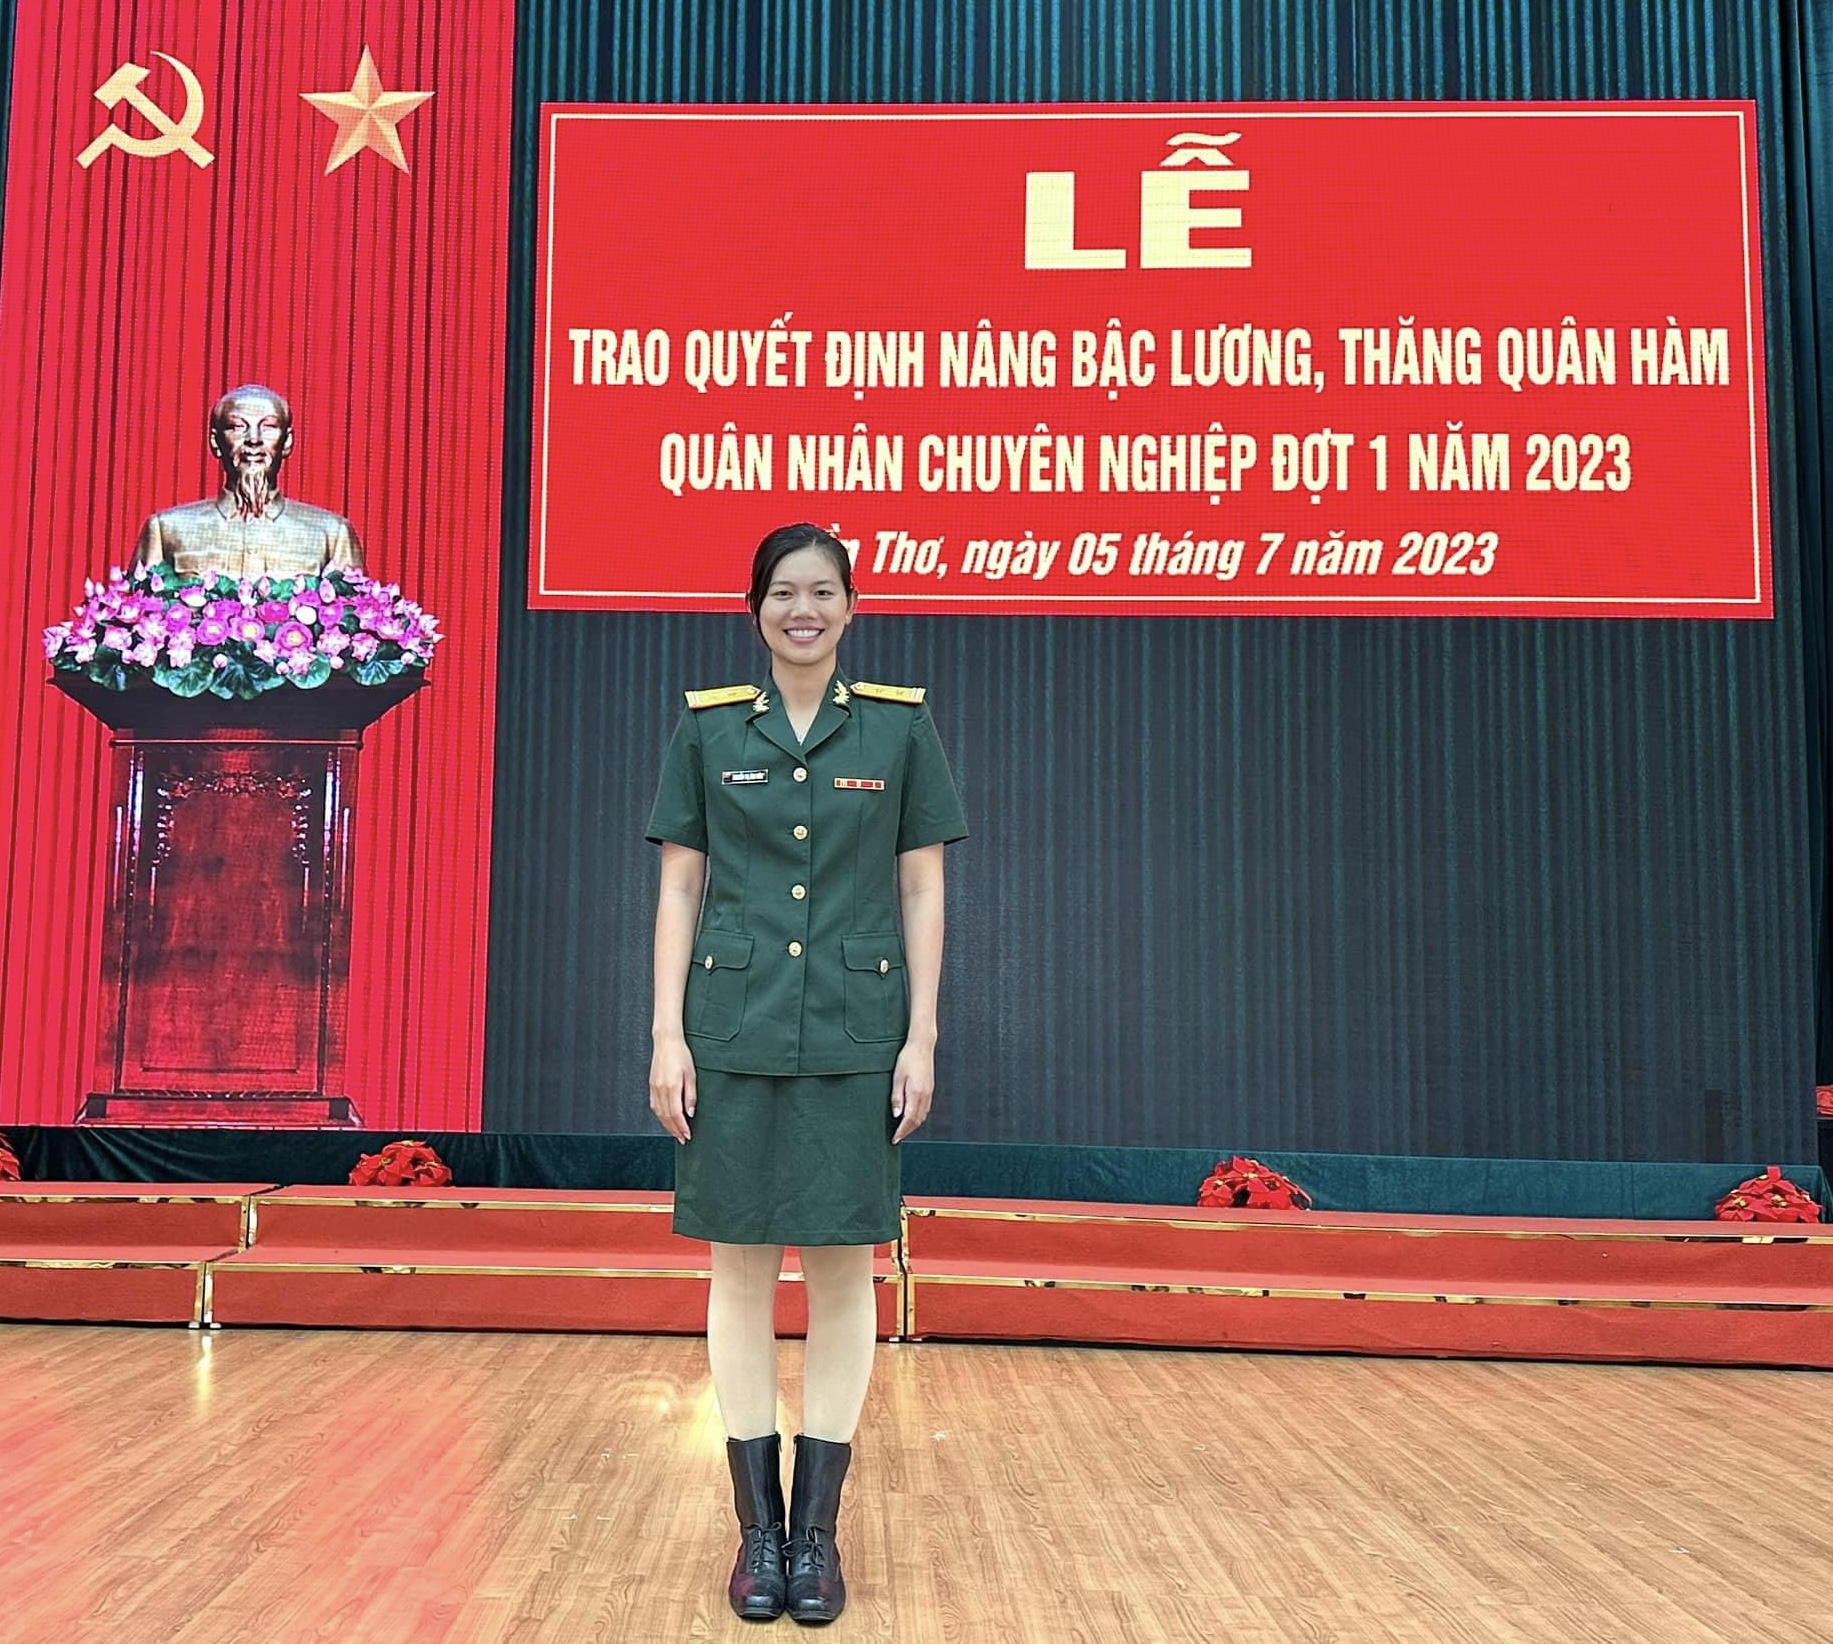 Ánh Viên trở thành trung tá quân nhân chuyên nghiệp trẻ nhất Việt Nam - Ảnh 1.